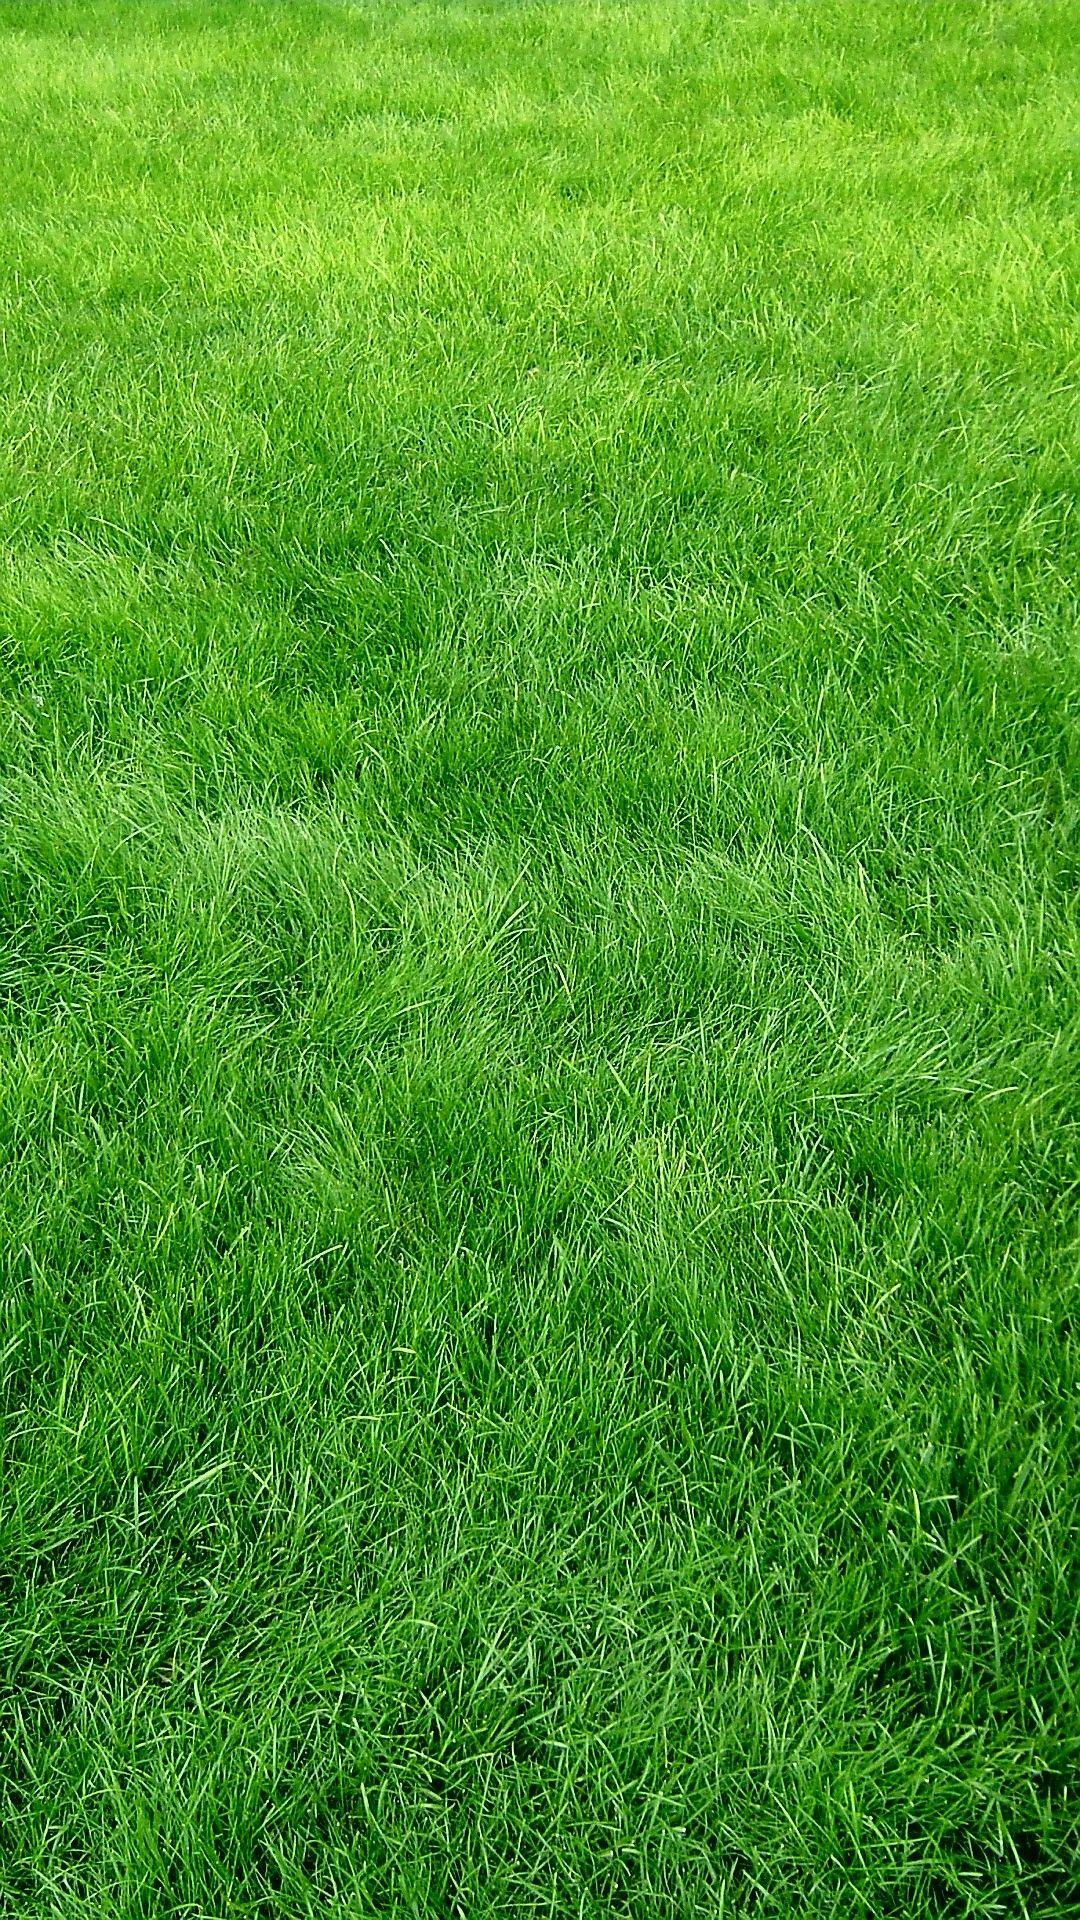 Hình nền đồng cỏ xanh Full HD cho iPhone